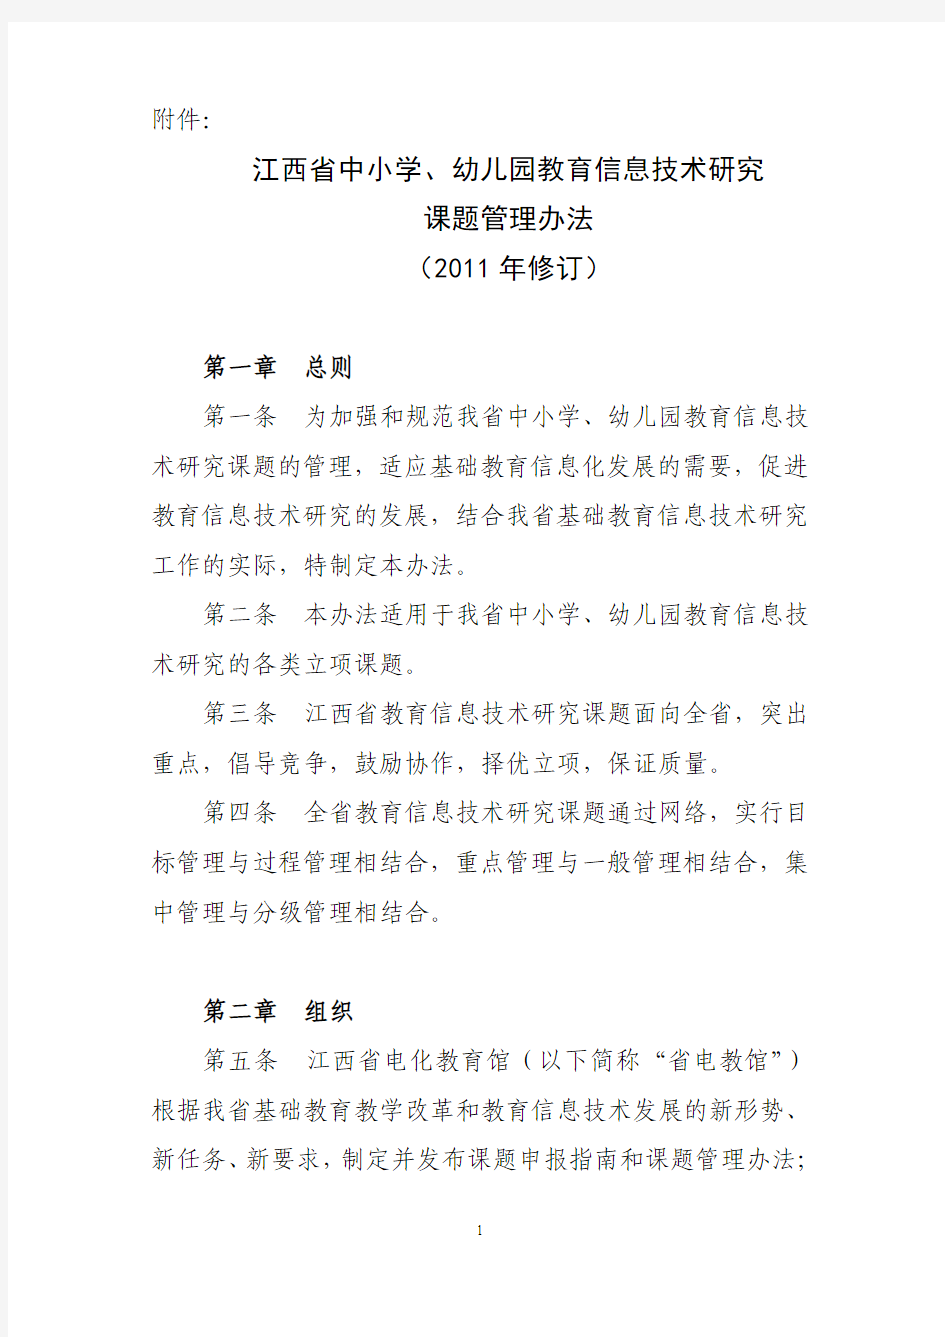 江西省中小学、幼儿园教育信息技术研究课题管理办法(2011年修订)